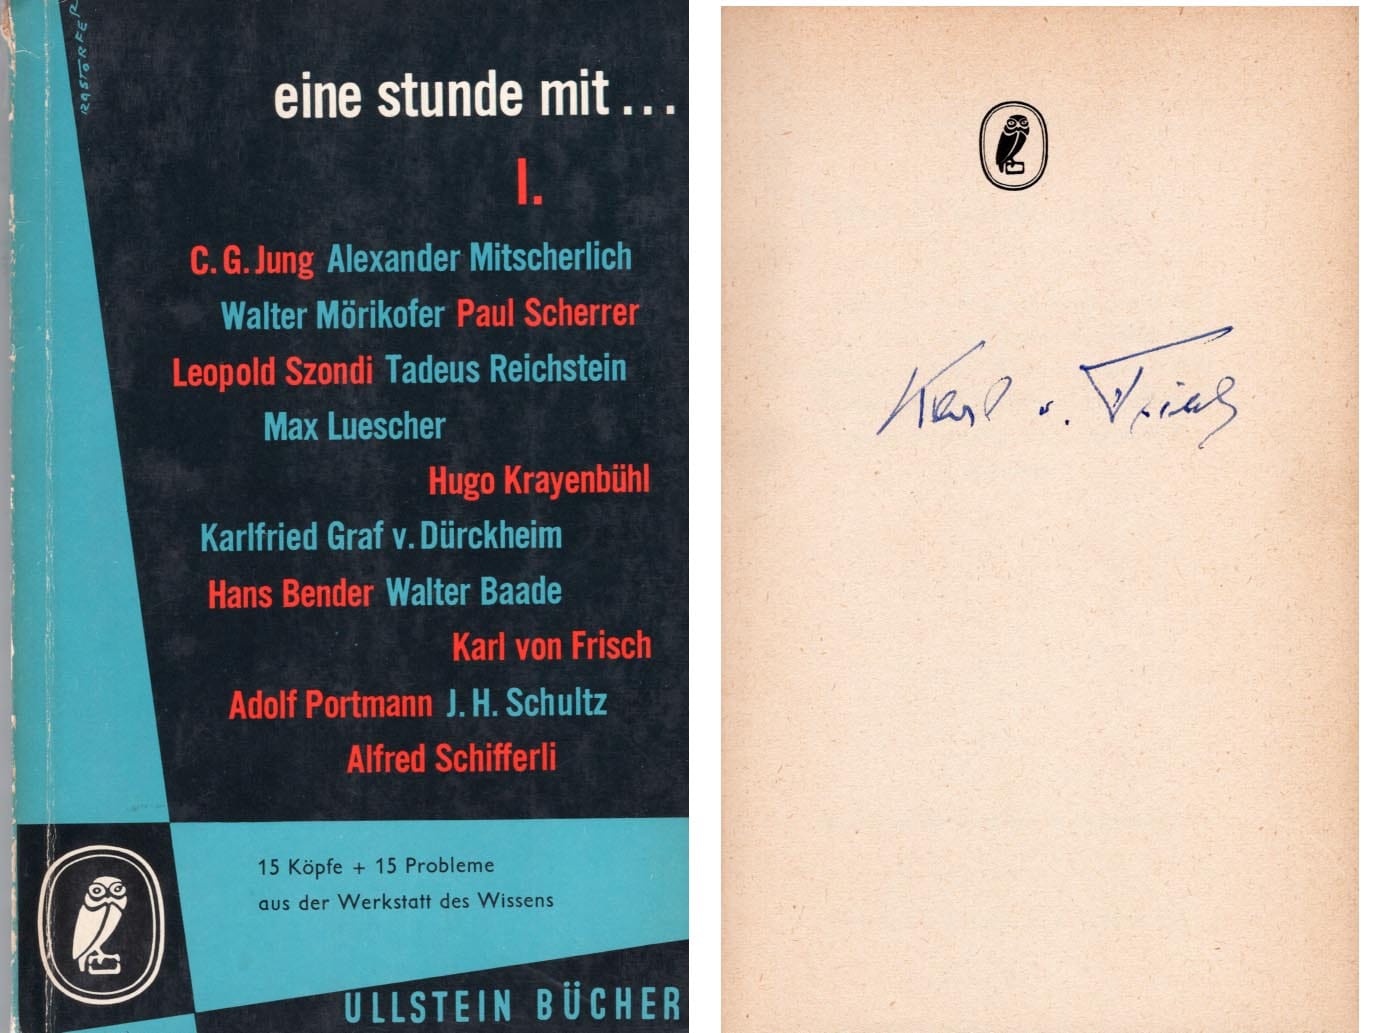 Karl  von Frisch Autograph Autogramm | ID 7427626827925